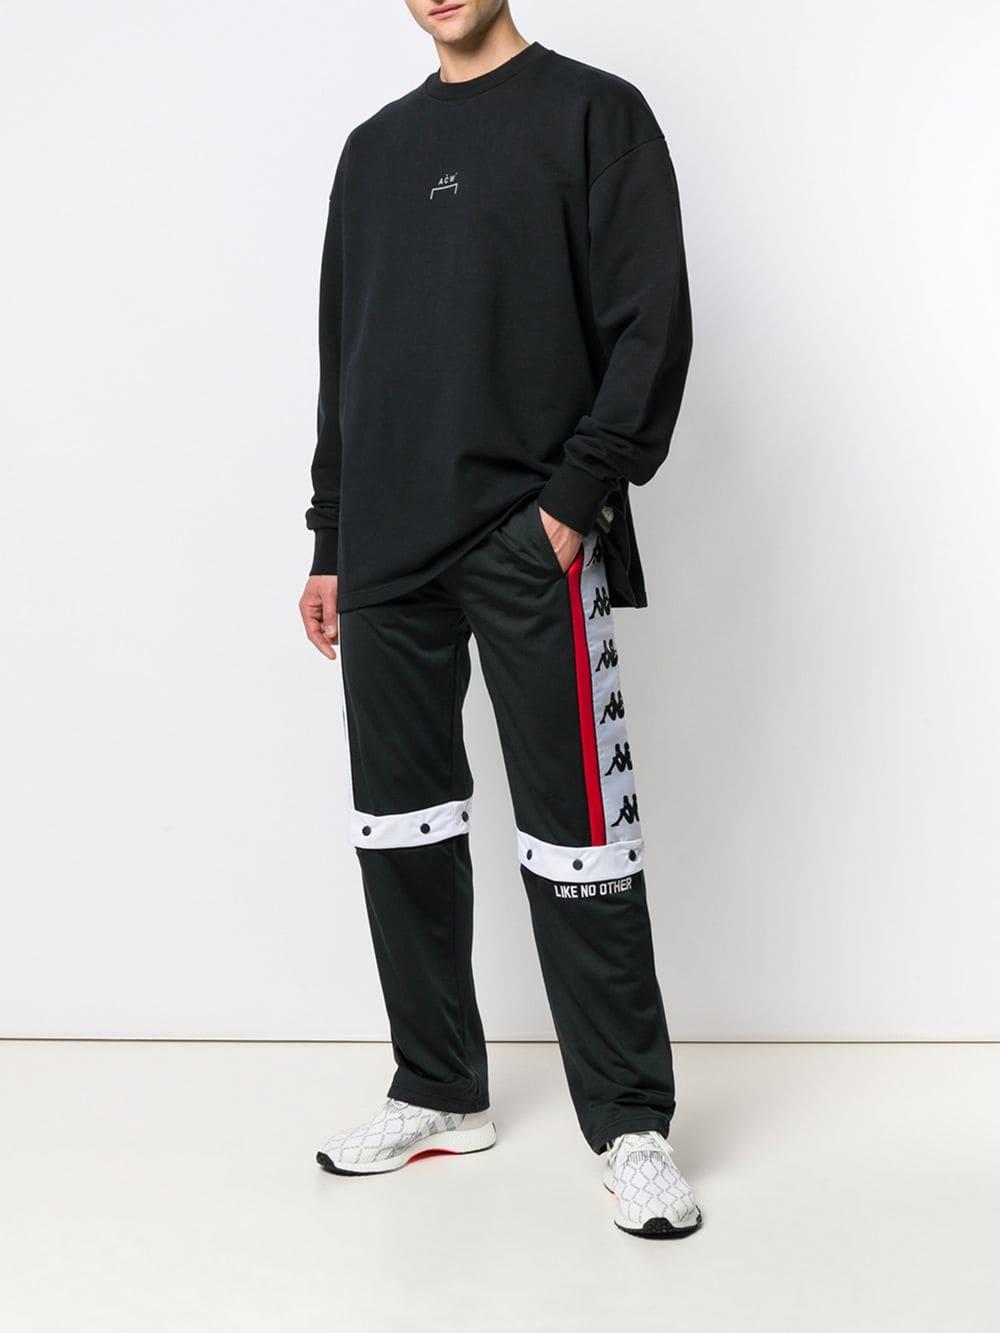 Kappa Logo Stripe Track Pants in Black for Men - Lyst